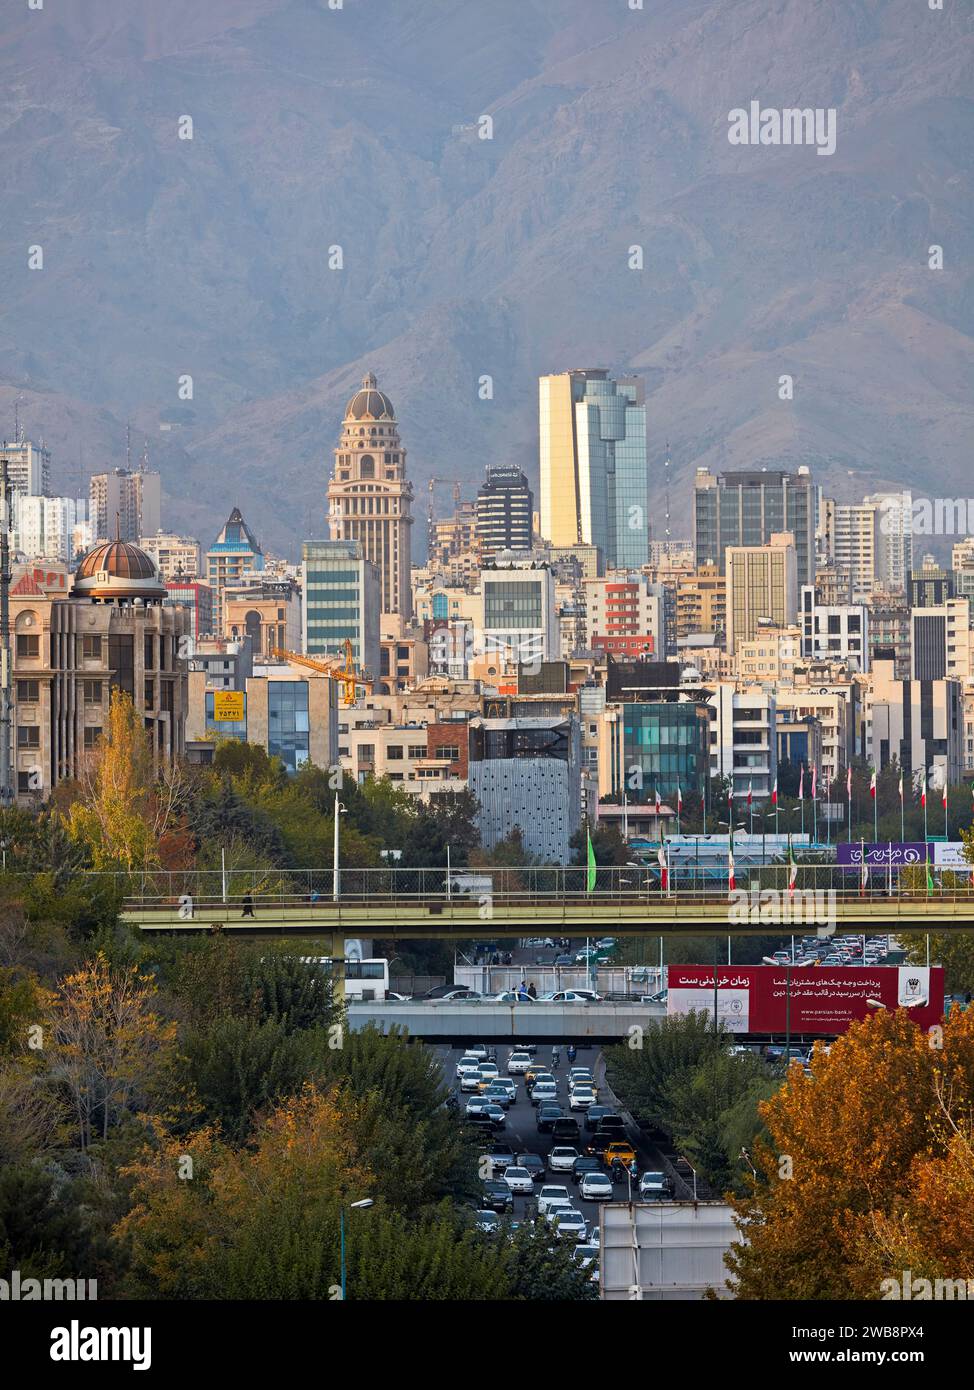 Blick auf den nördlichen Teil der Stadt Teheran von der Tabiat-Brücke. Teheran, Iran. Stockfoto